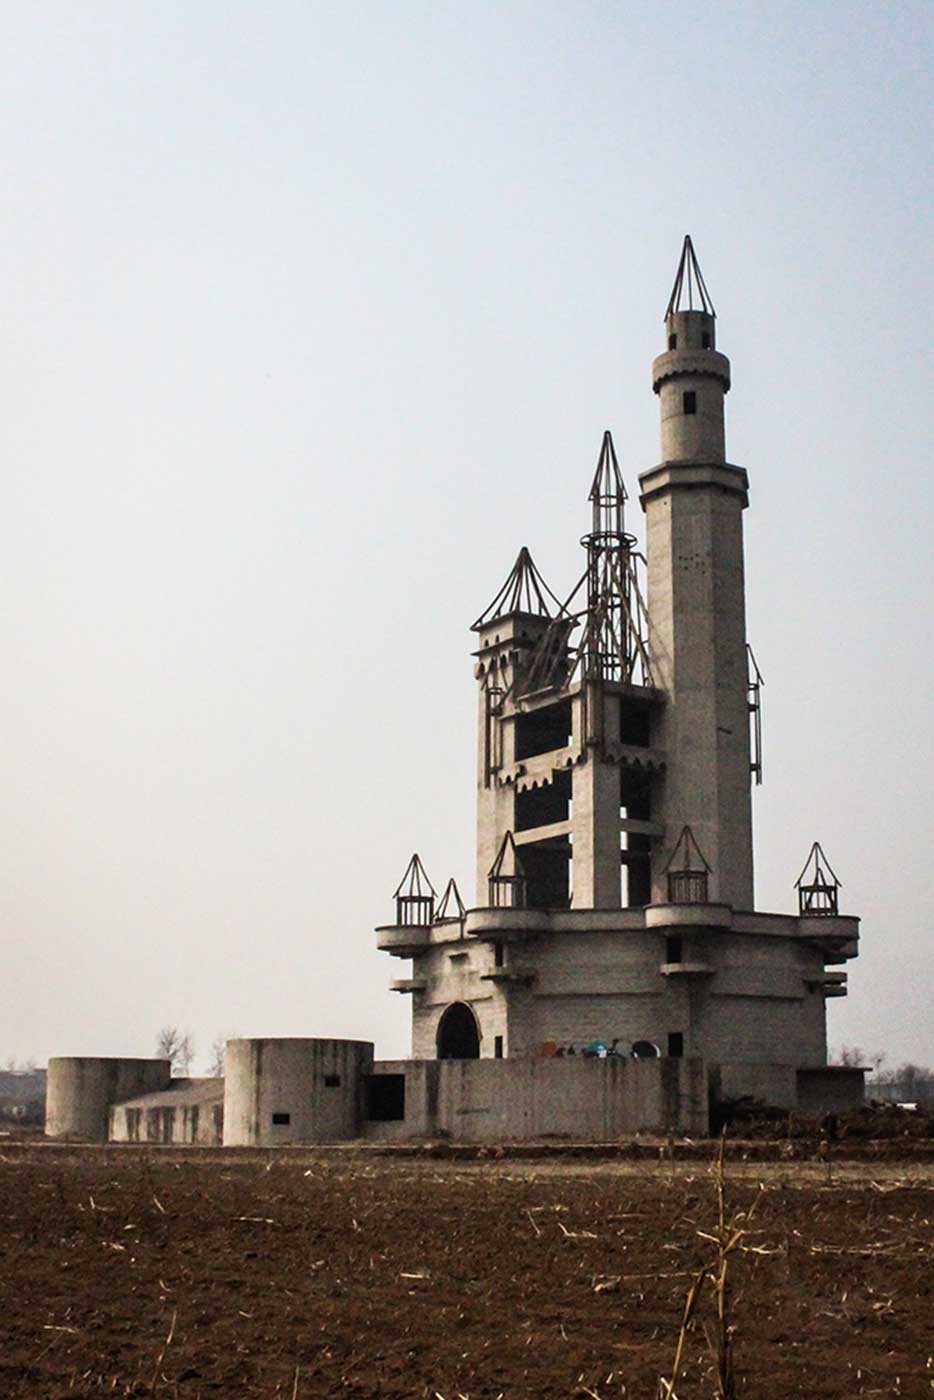 Wonderland: China's Abandoned Theme Park 